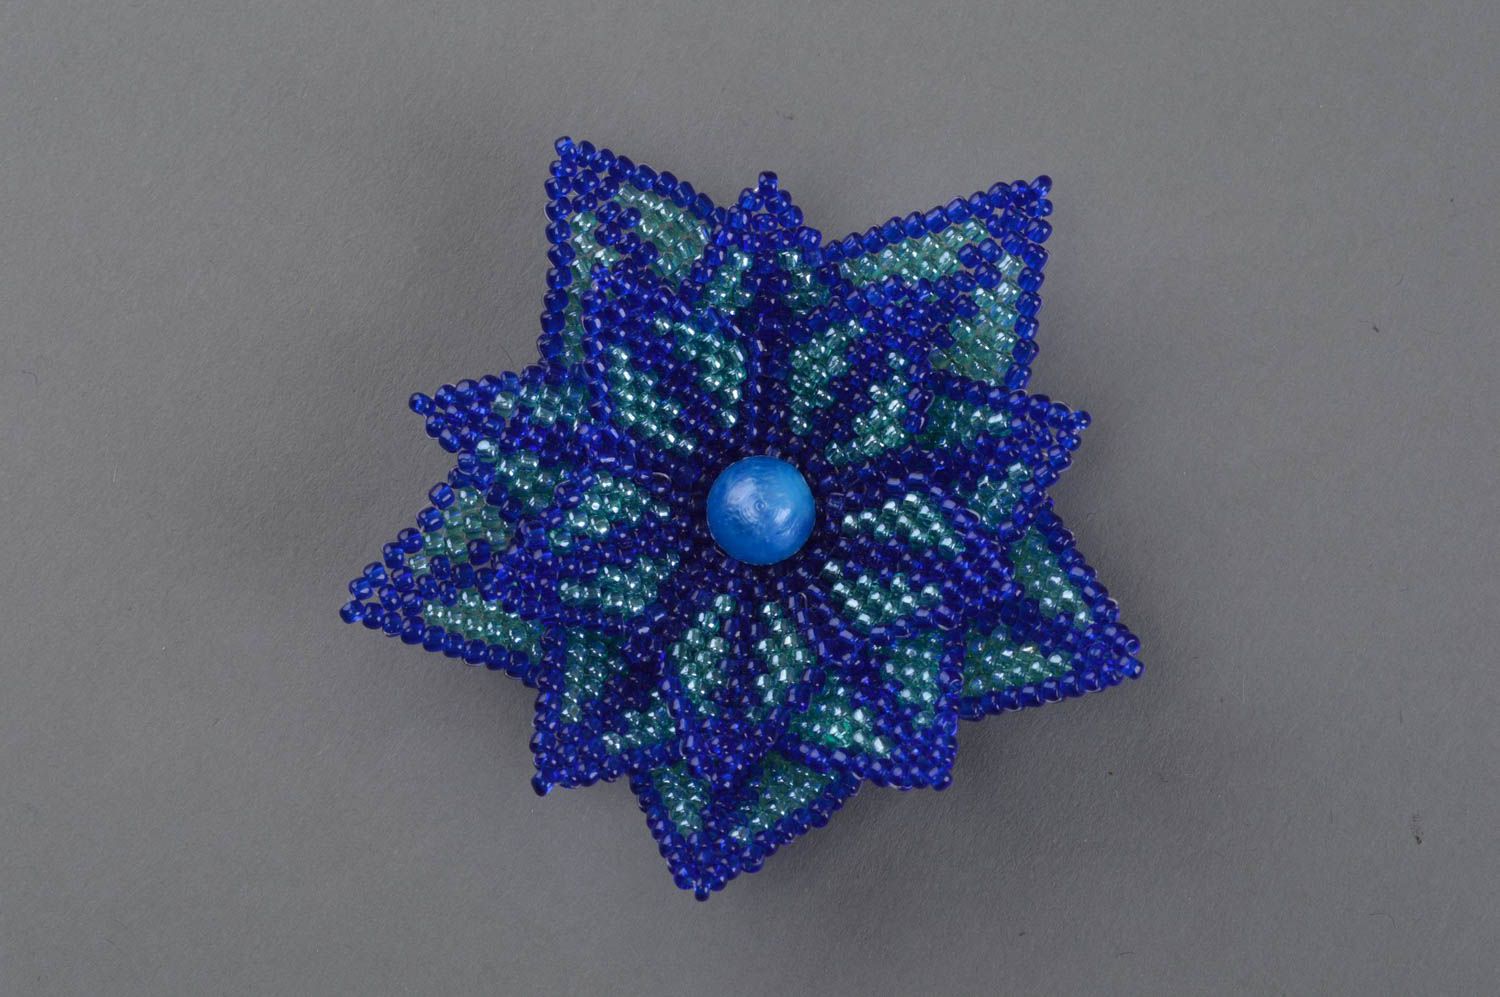 Blaue Blumen künstlerische Brosche aus Glasperlen einyigartig sch;n handmade foto 2